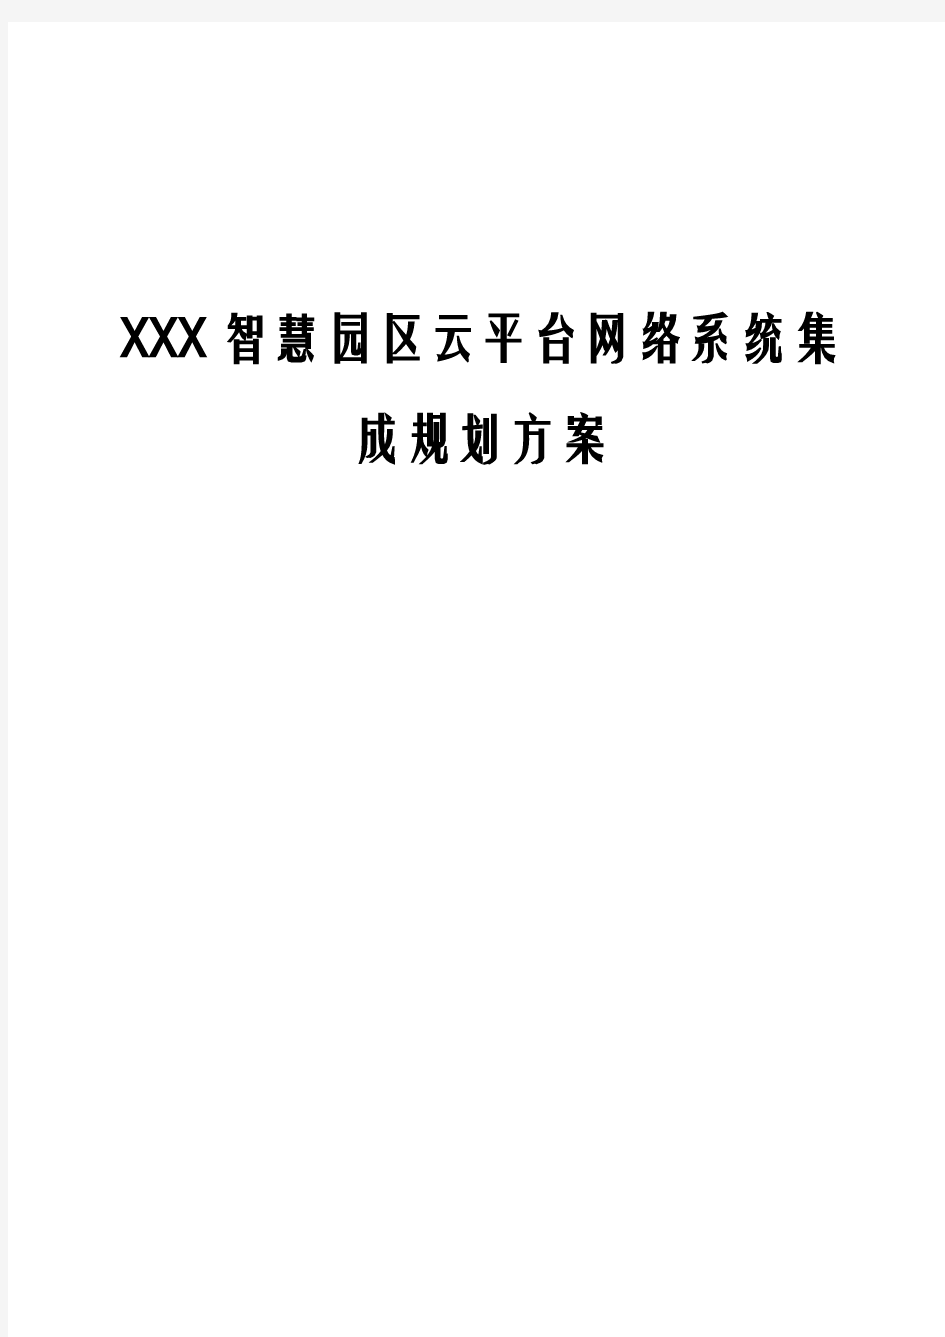 XXX智慧园区云平台网络系统集成规划方案